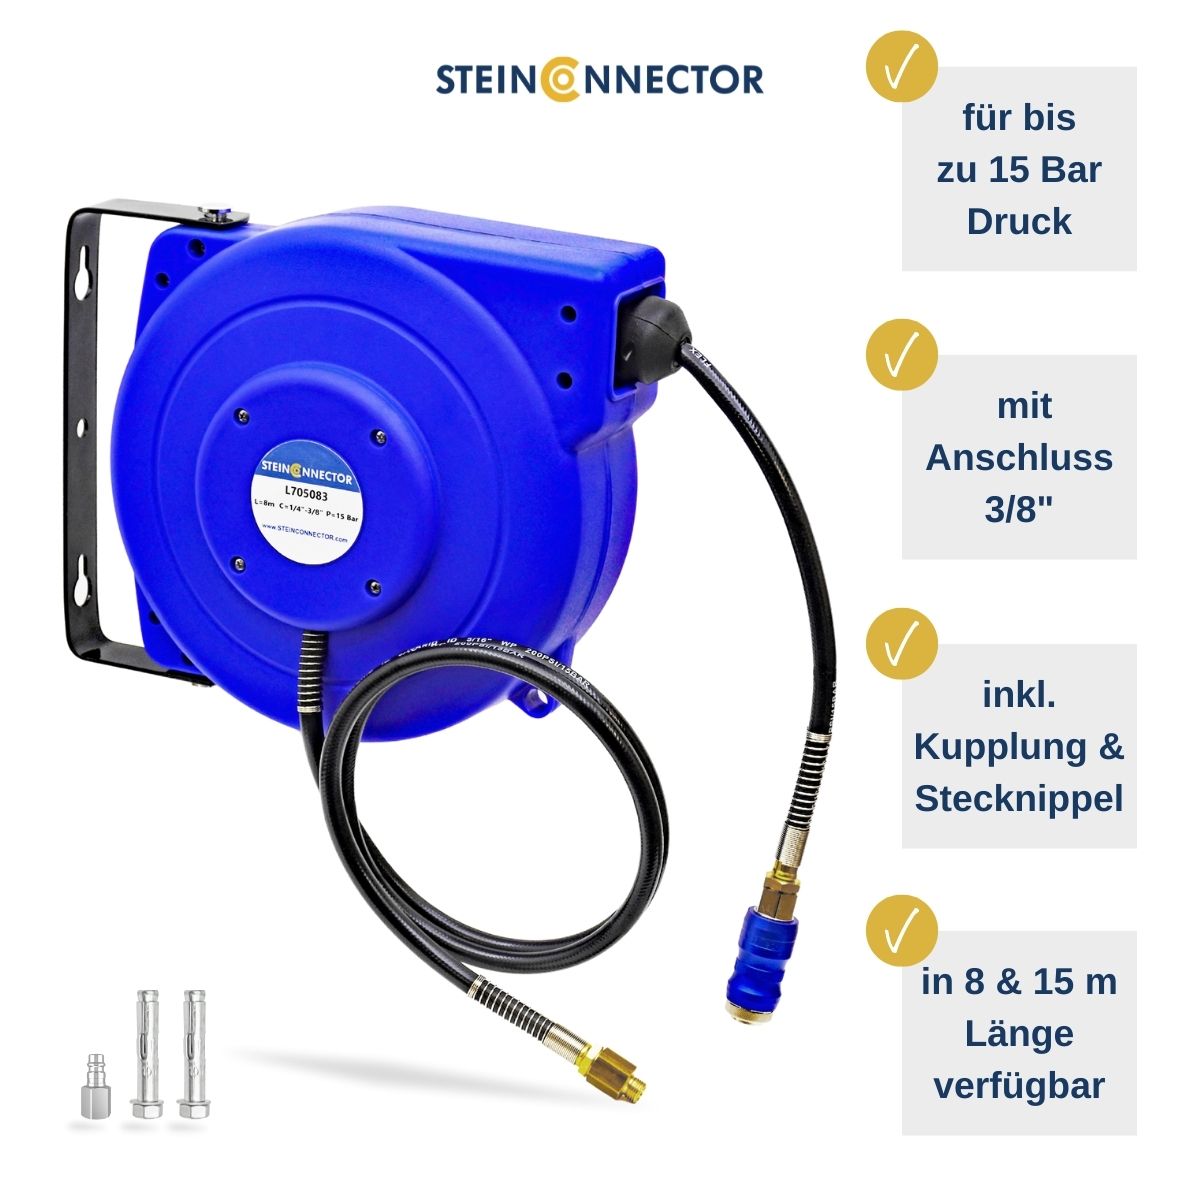 Steinconnector Profi Schlauchaufroller blau in 8 und 15 m Schlauch-Länge - Automatik Schlauch-Trommel mit Wand-Halter inkl. Montage-Material